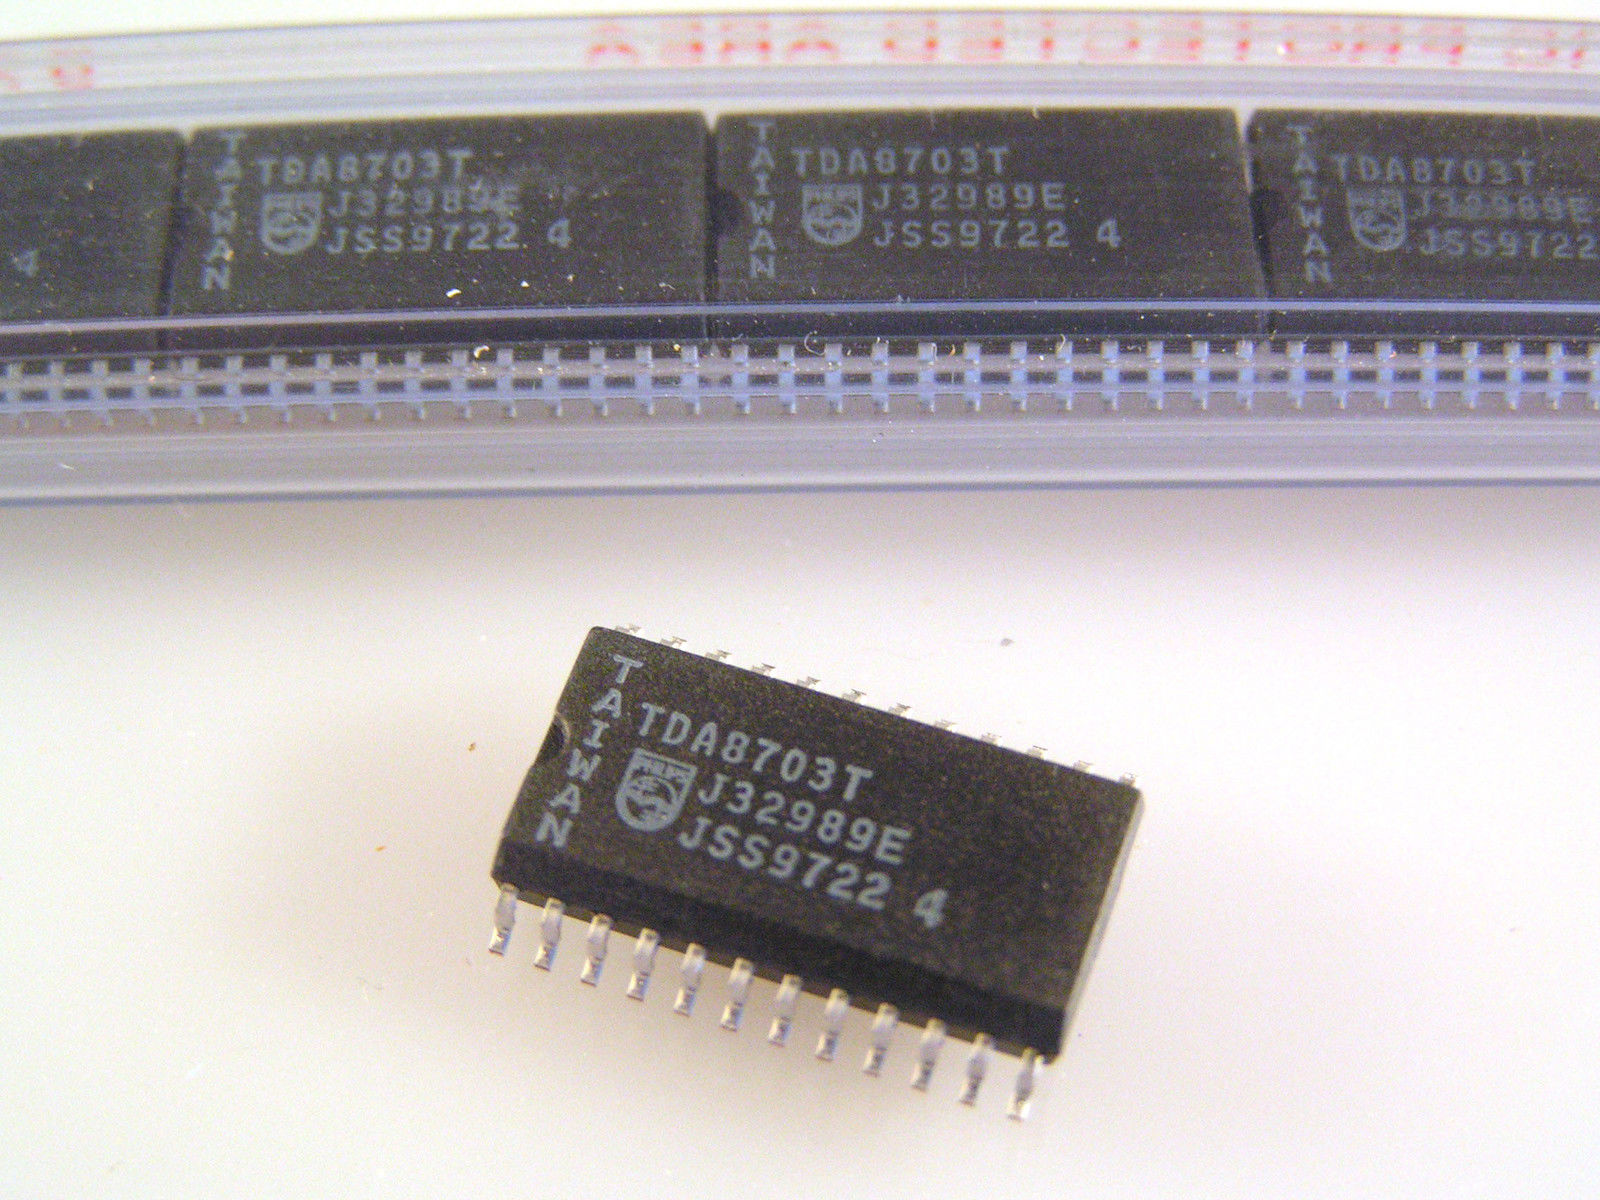 Philips TDA8703T 8-bit de alta velocidad de analógico a digital 24 Pin Soic 1 Pieza OMA025